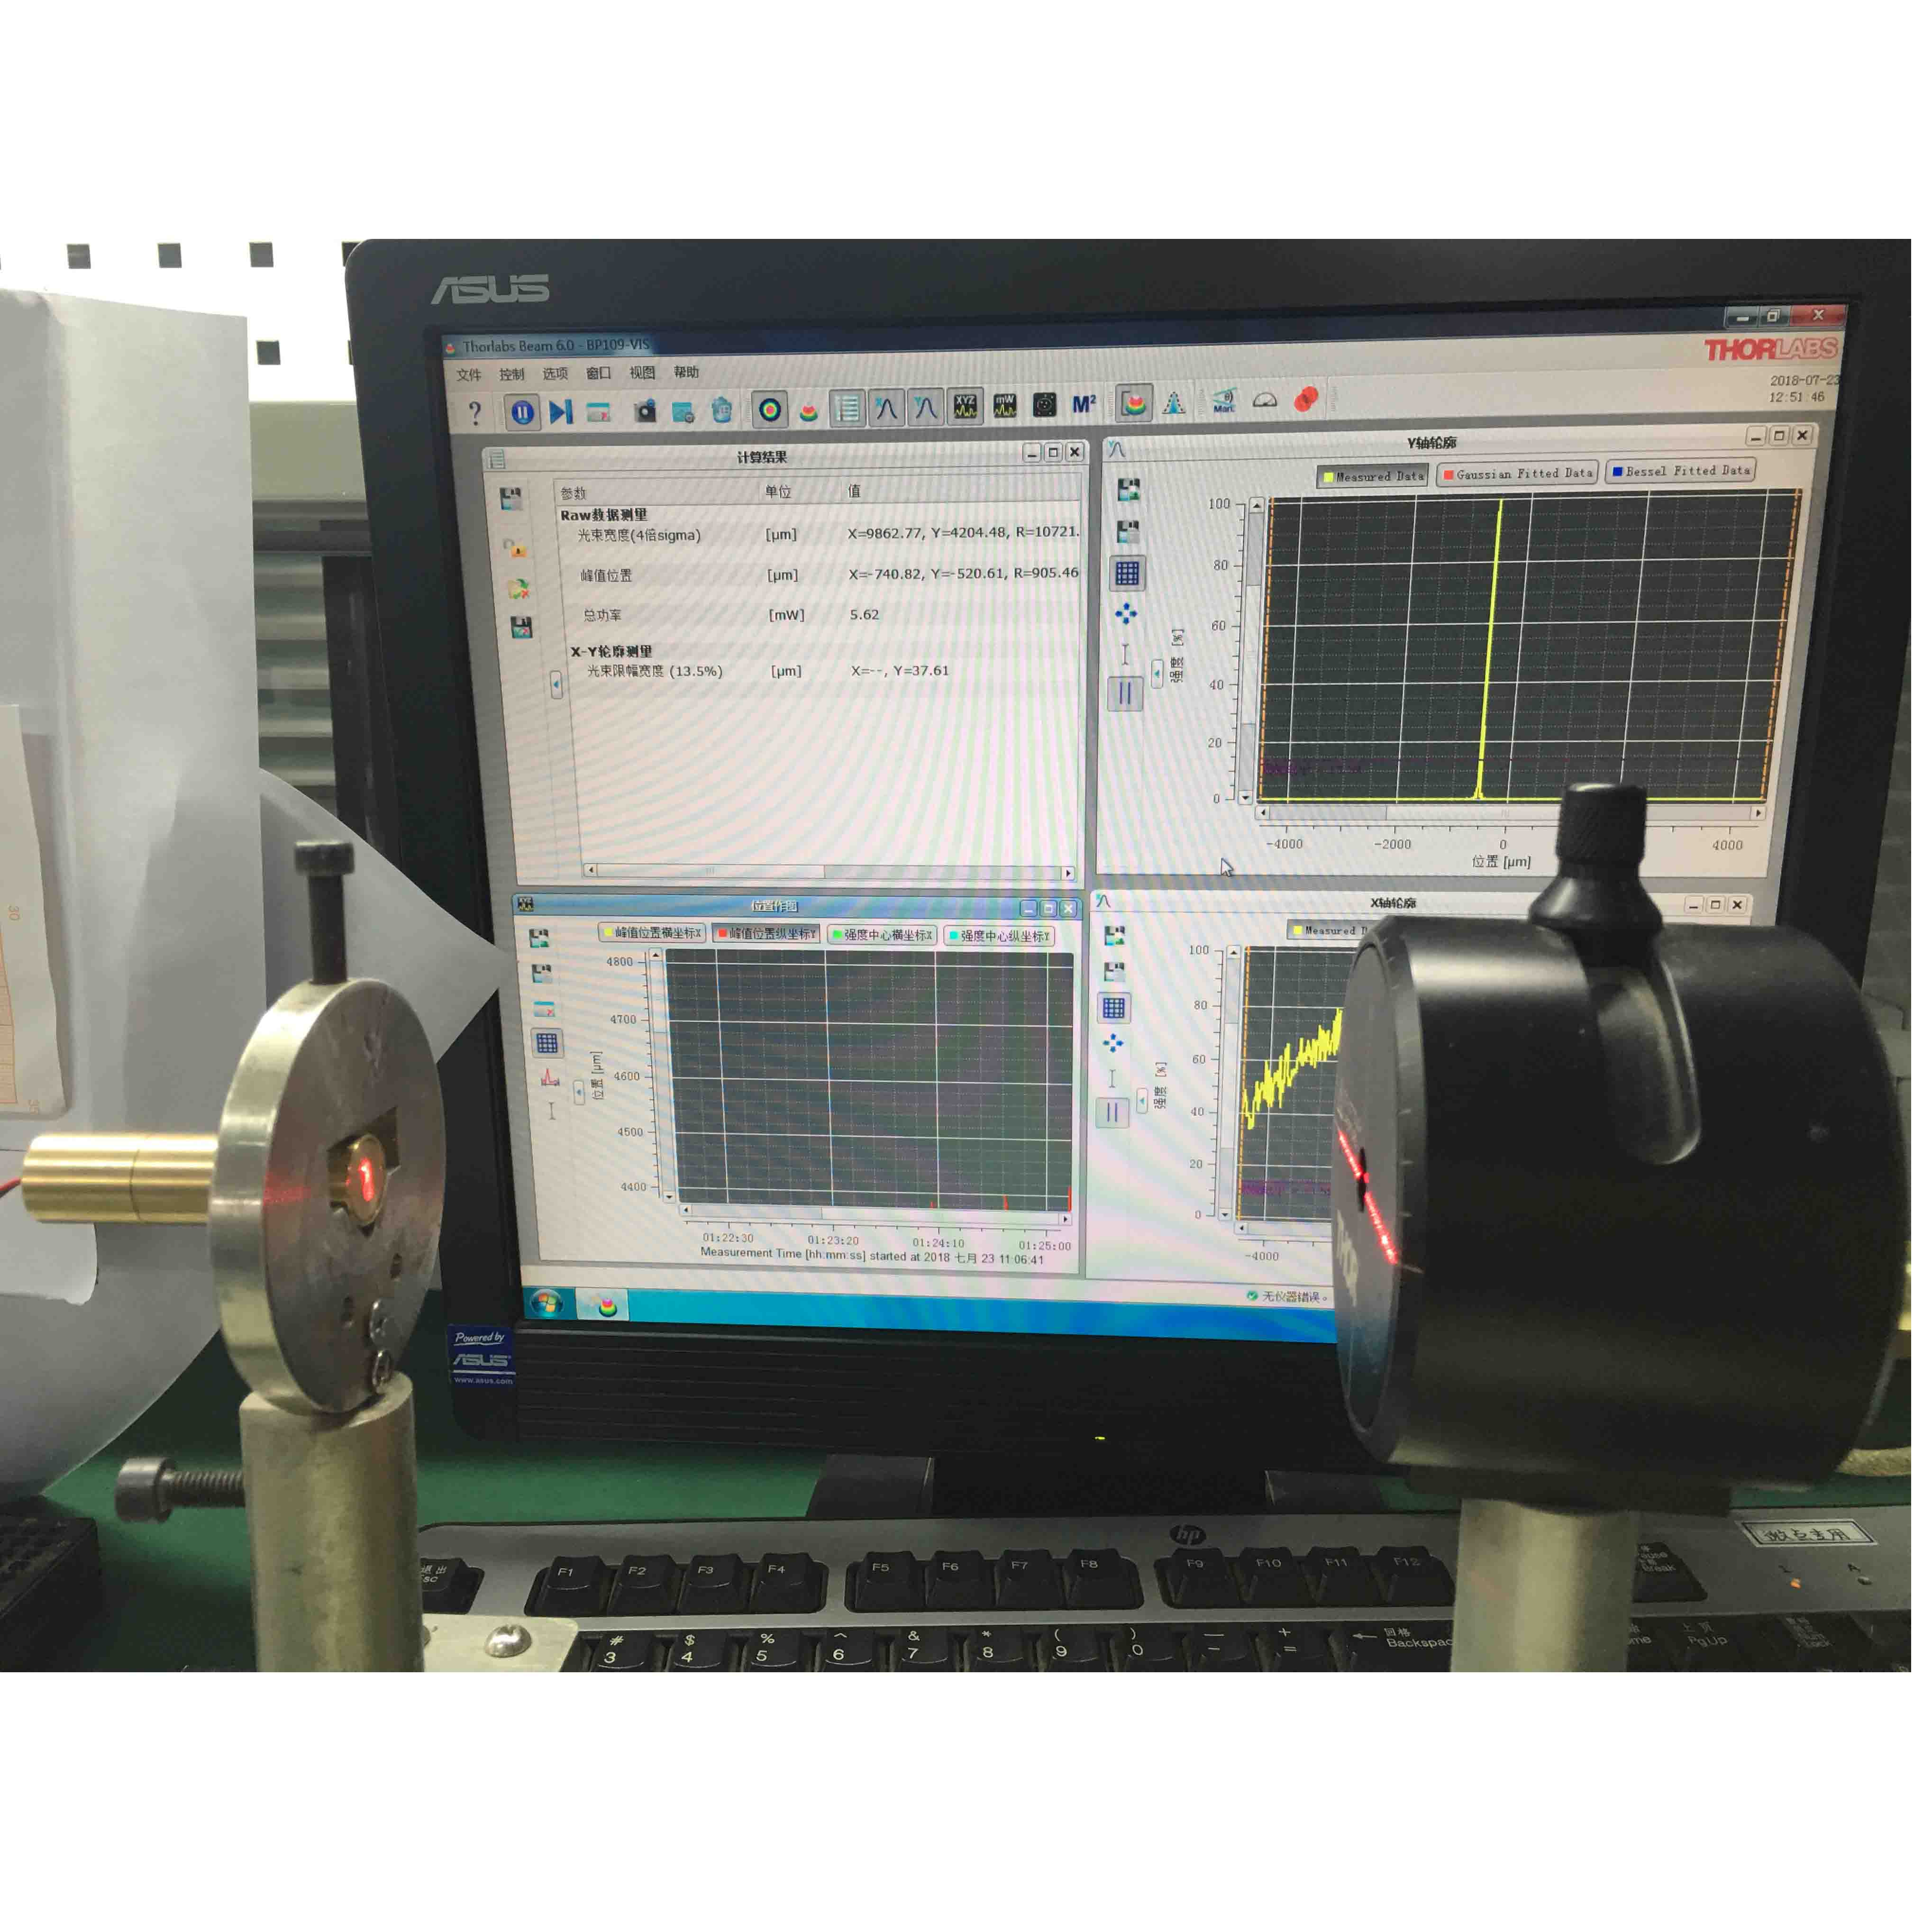 Modulo laser della linea di distribuzione uniforme della lente di Powell per la guida visiva robotica